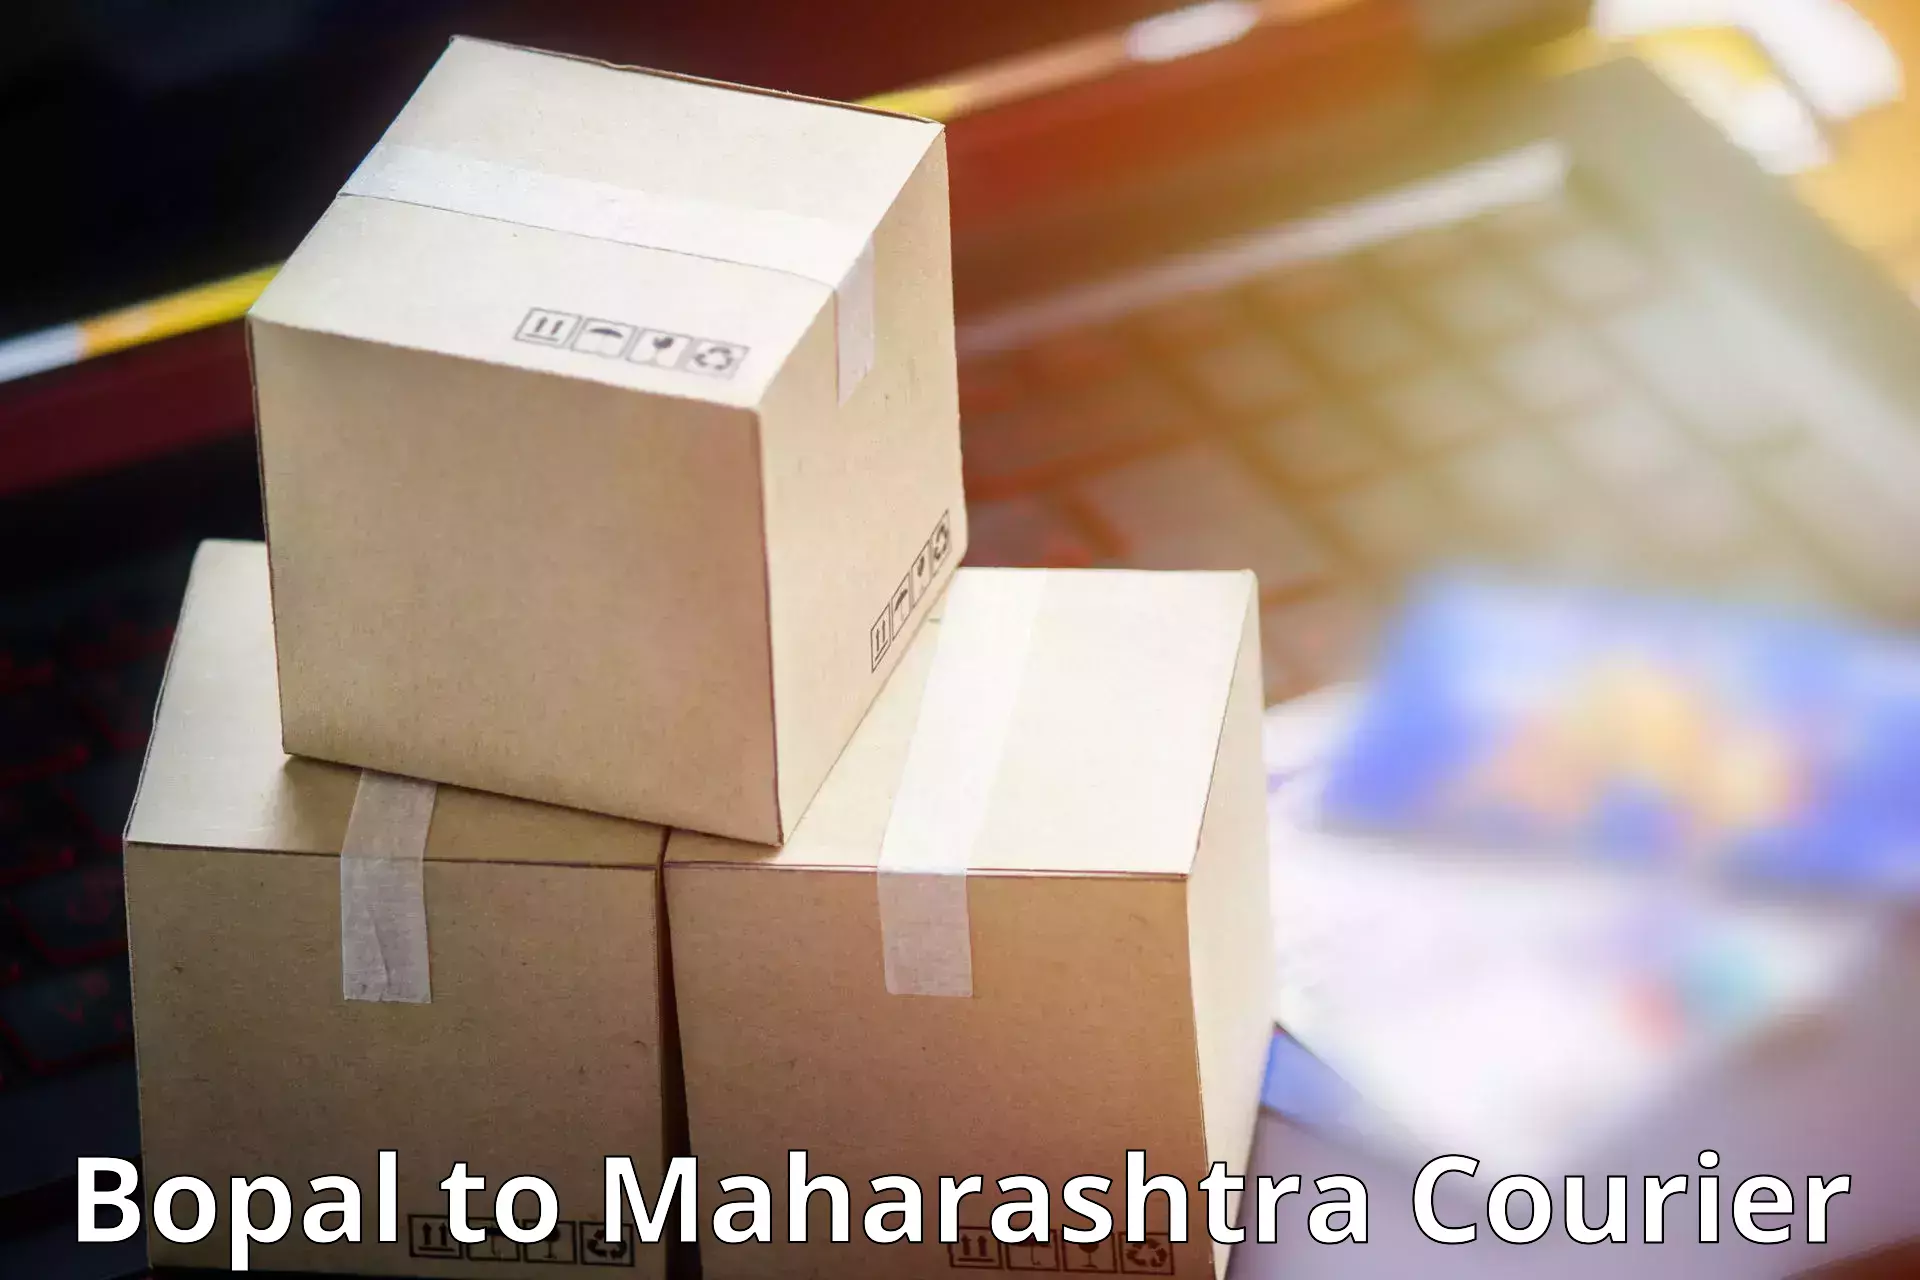 Budget-friendly shipping Bopal to Maharashtra